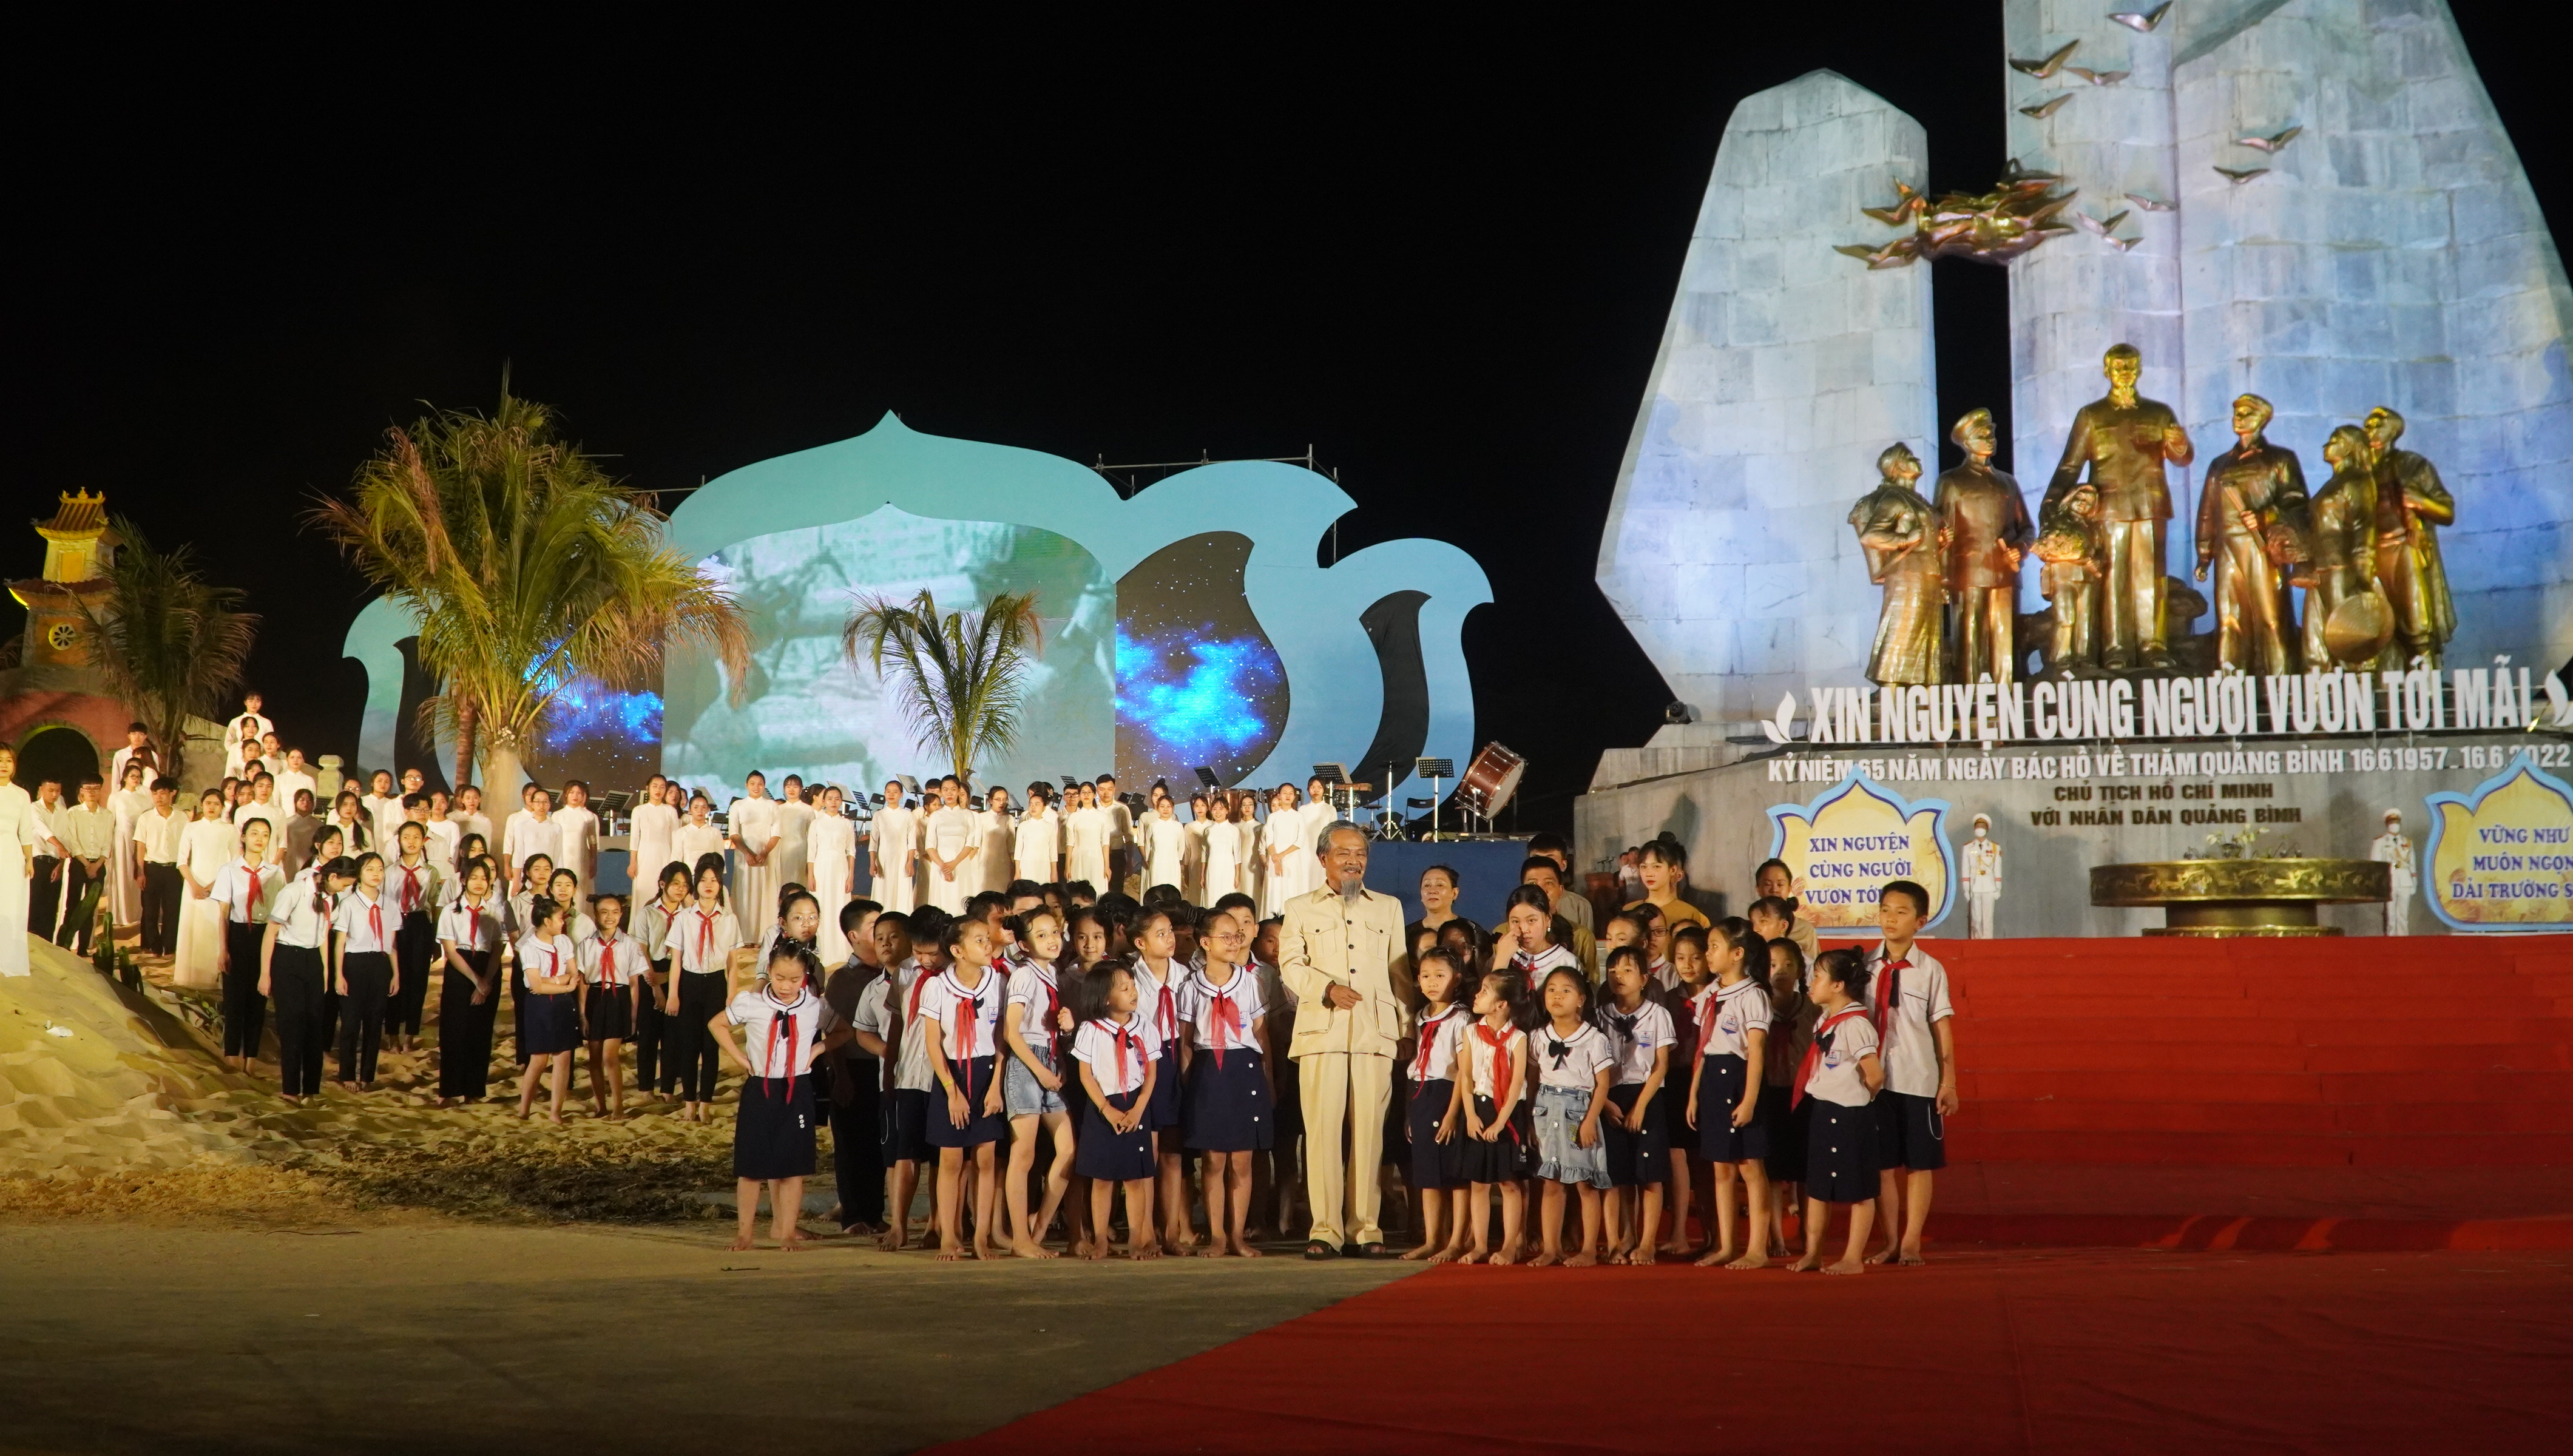 Thực hiện lời căn dặn của Bác Hồ kính yêu, Quảng Bình luôn nỗ lực xây dựng Đảng bộ trong sạch, vững mạnh (hình ảnh tái hiện tại lễ kỷ niệm 65 năm Ngày Bác Hồ về thăm Quảng Bình).